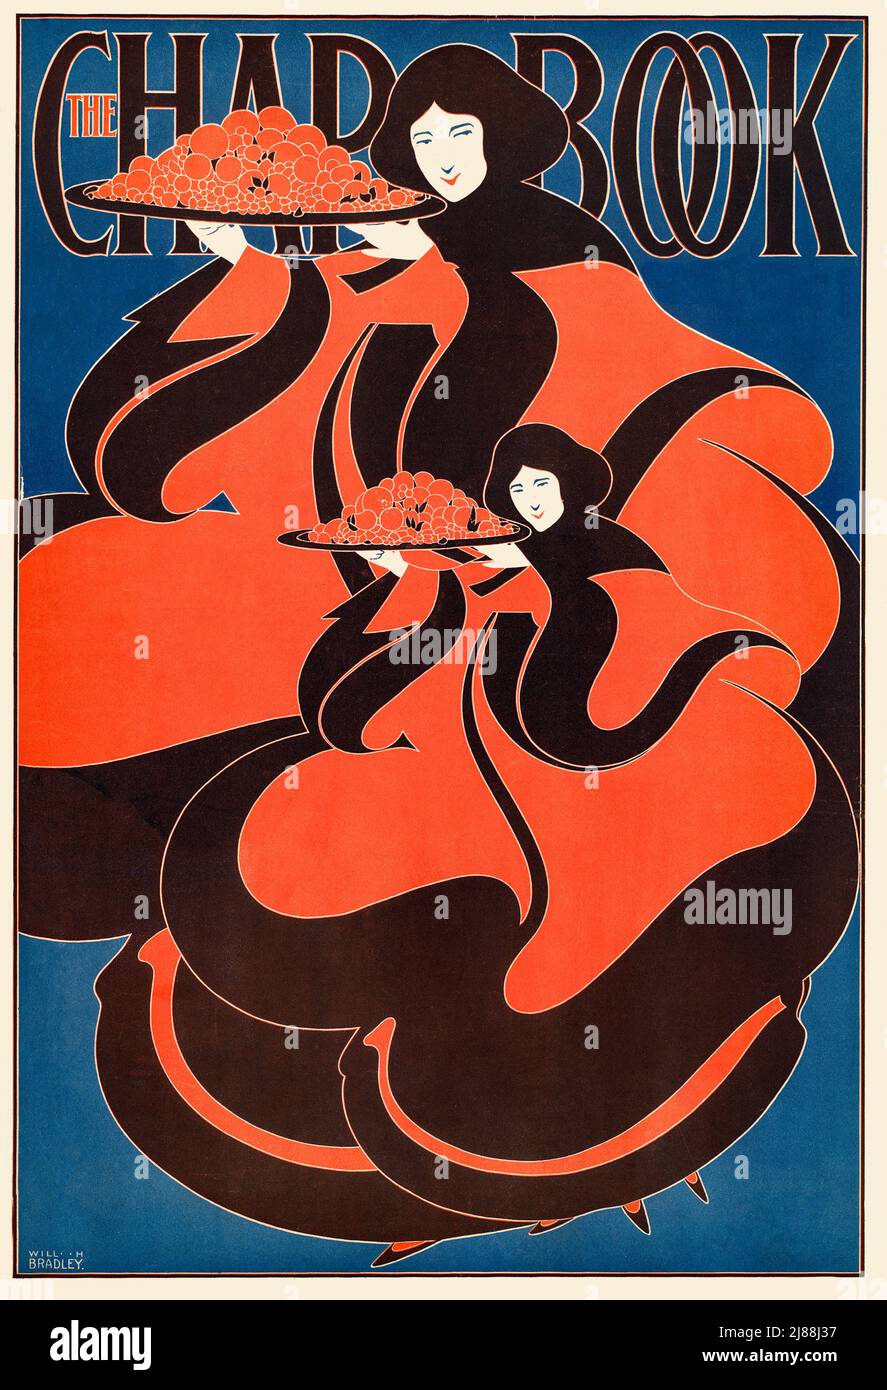 Une 19th affiche Art Nouveau américaine de la fin du siècle, de jeunes femmes portant des plateaux de nourriture pour le livre CHAP, un magazine littéraire américain entre 1894 et 1898. L'artiste est will Bradley (1868-1962) Banque D'Images